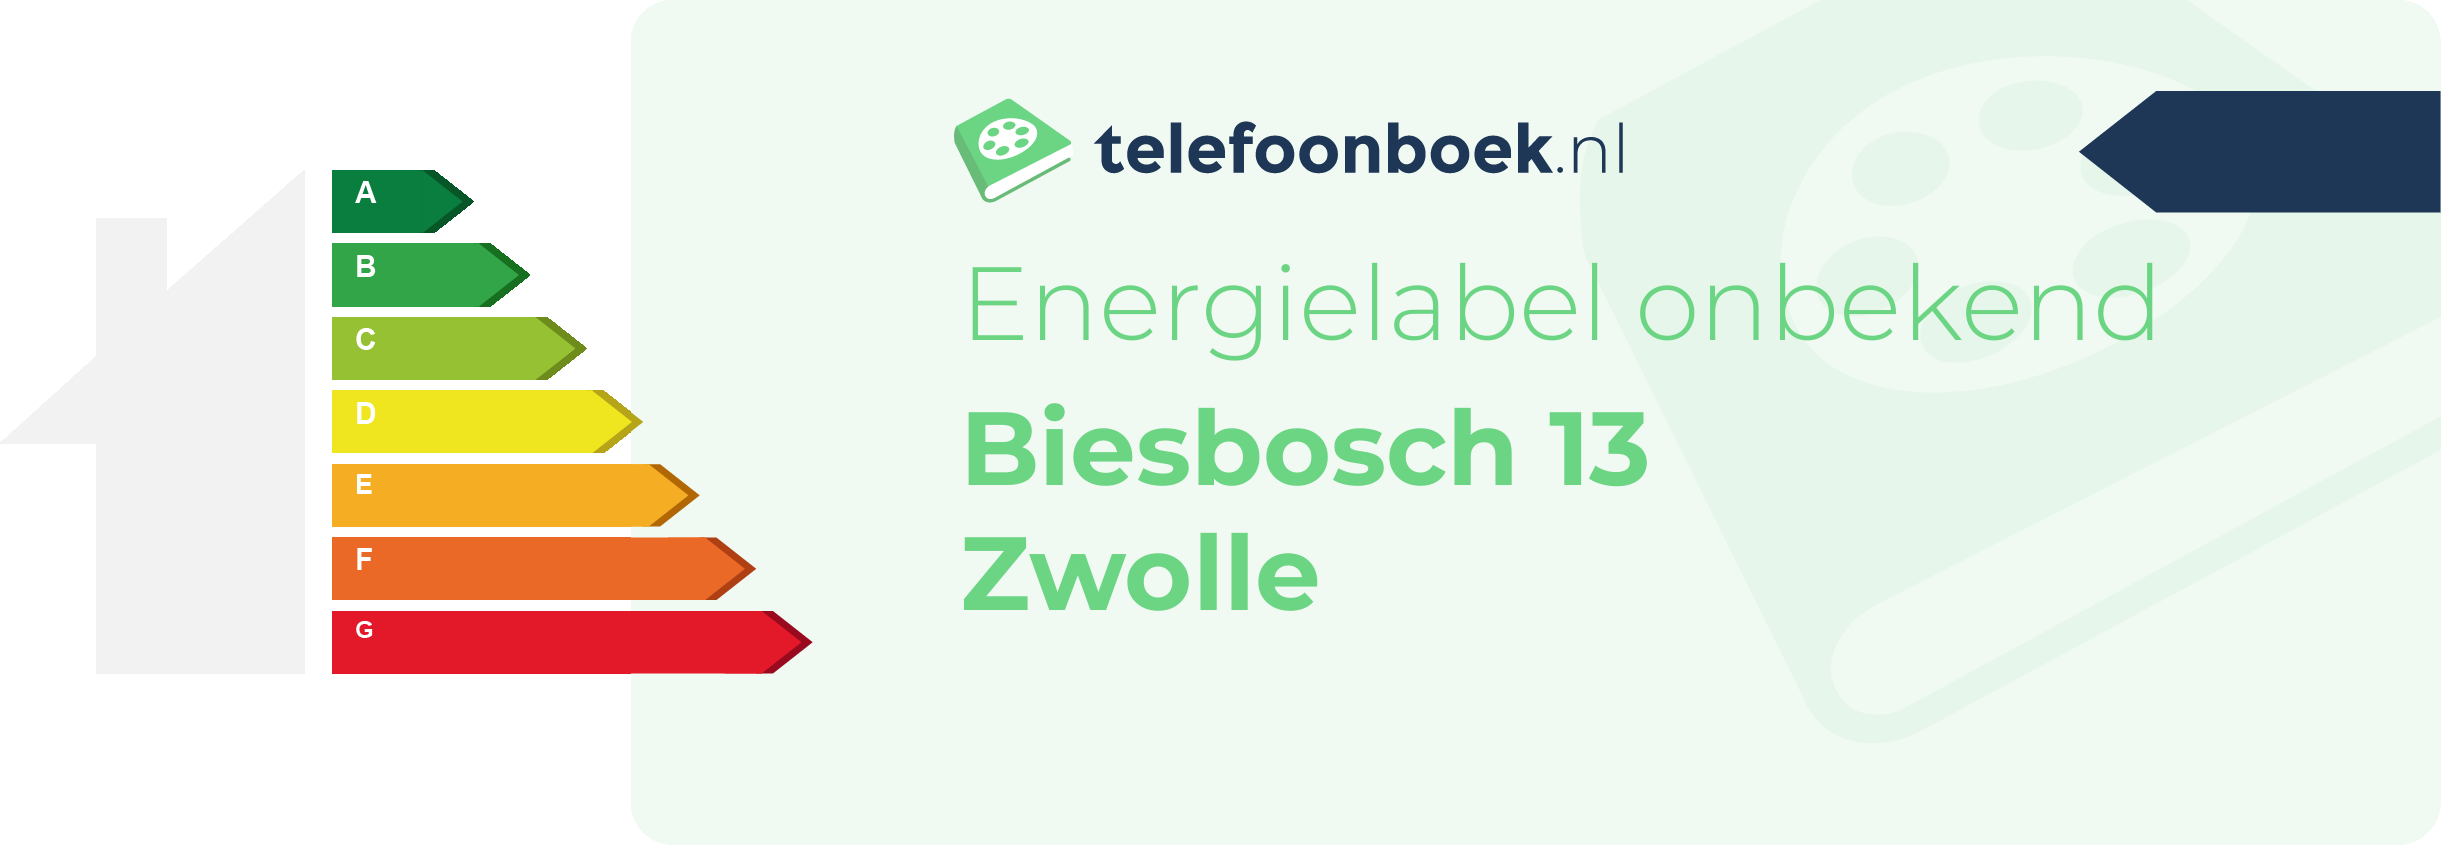 Energielabel Biesbosch 13 Zwolle